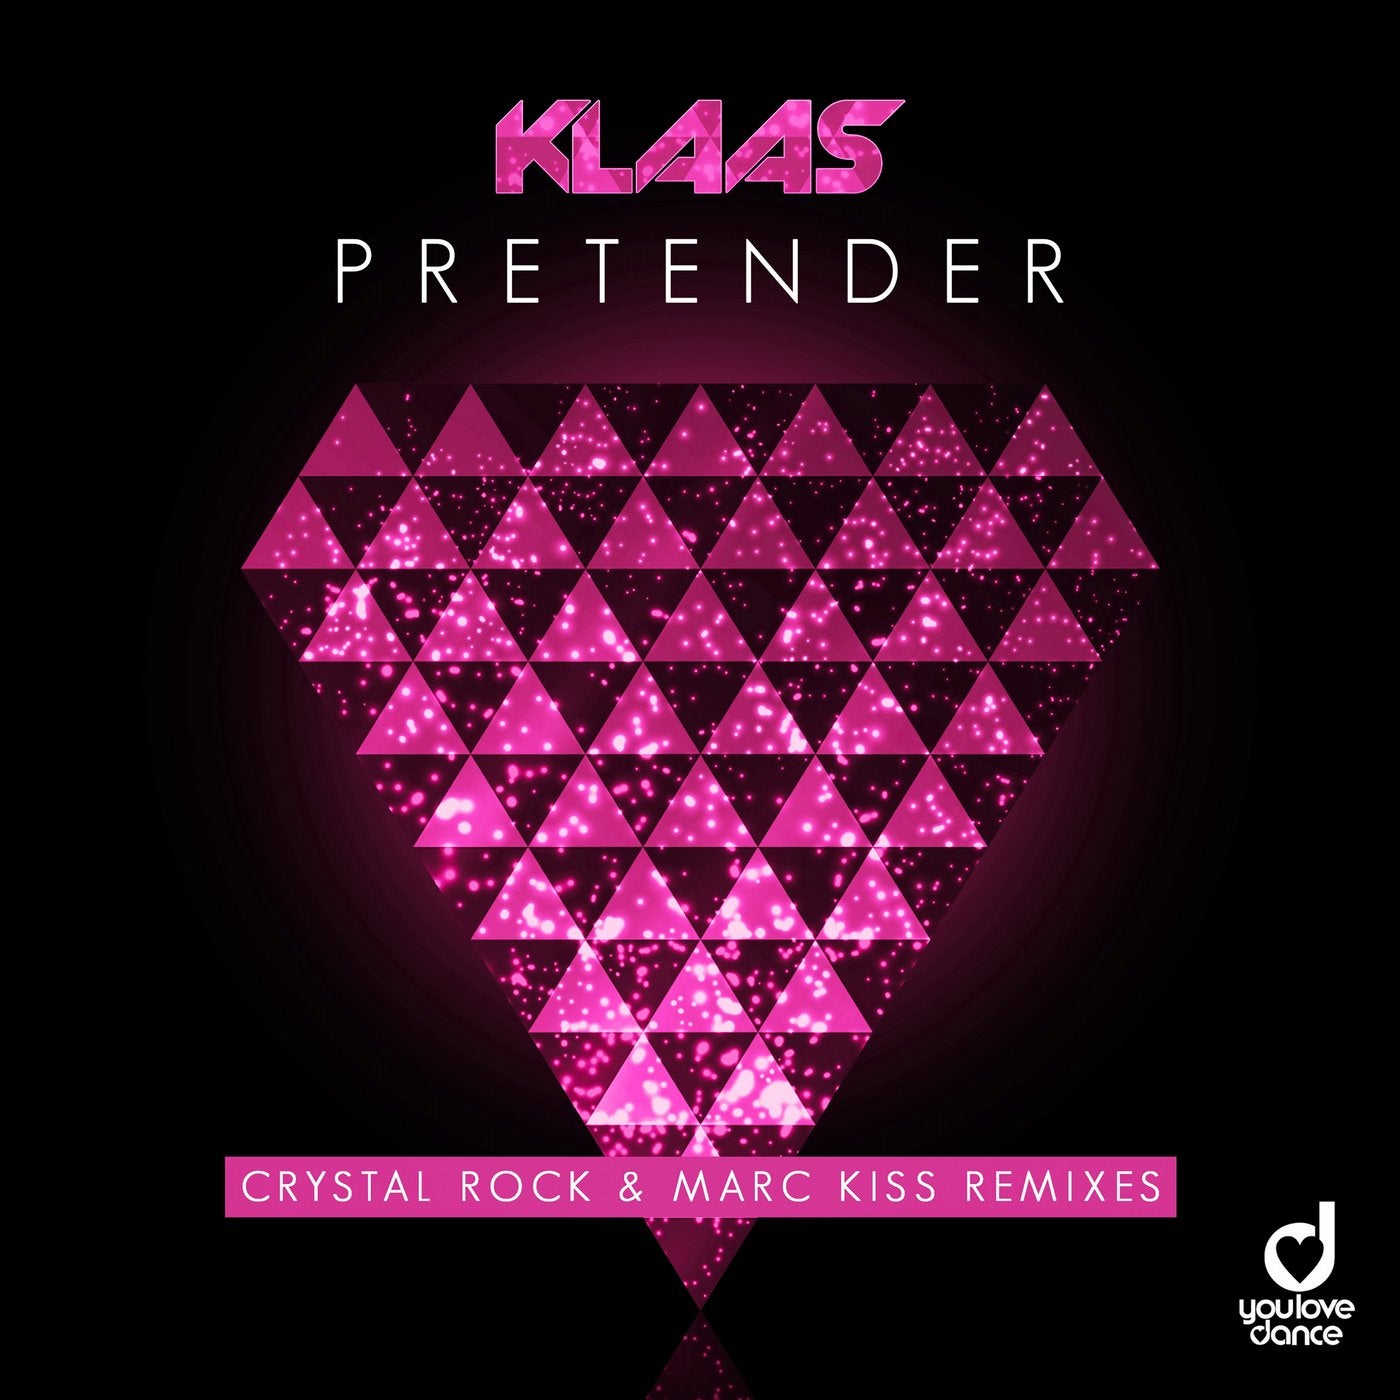 Pretender (Crystal Rock & Marc Kiss Remixes)